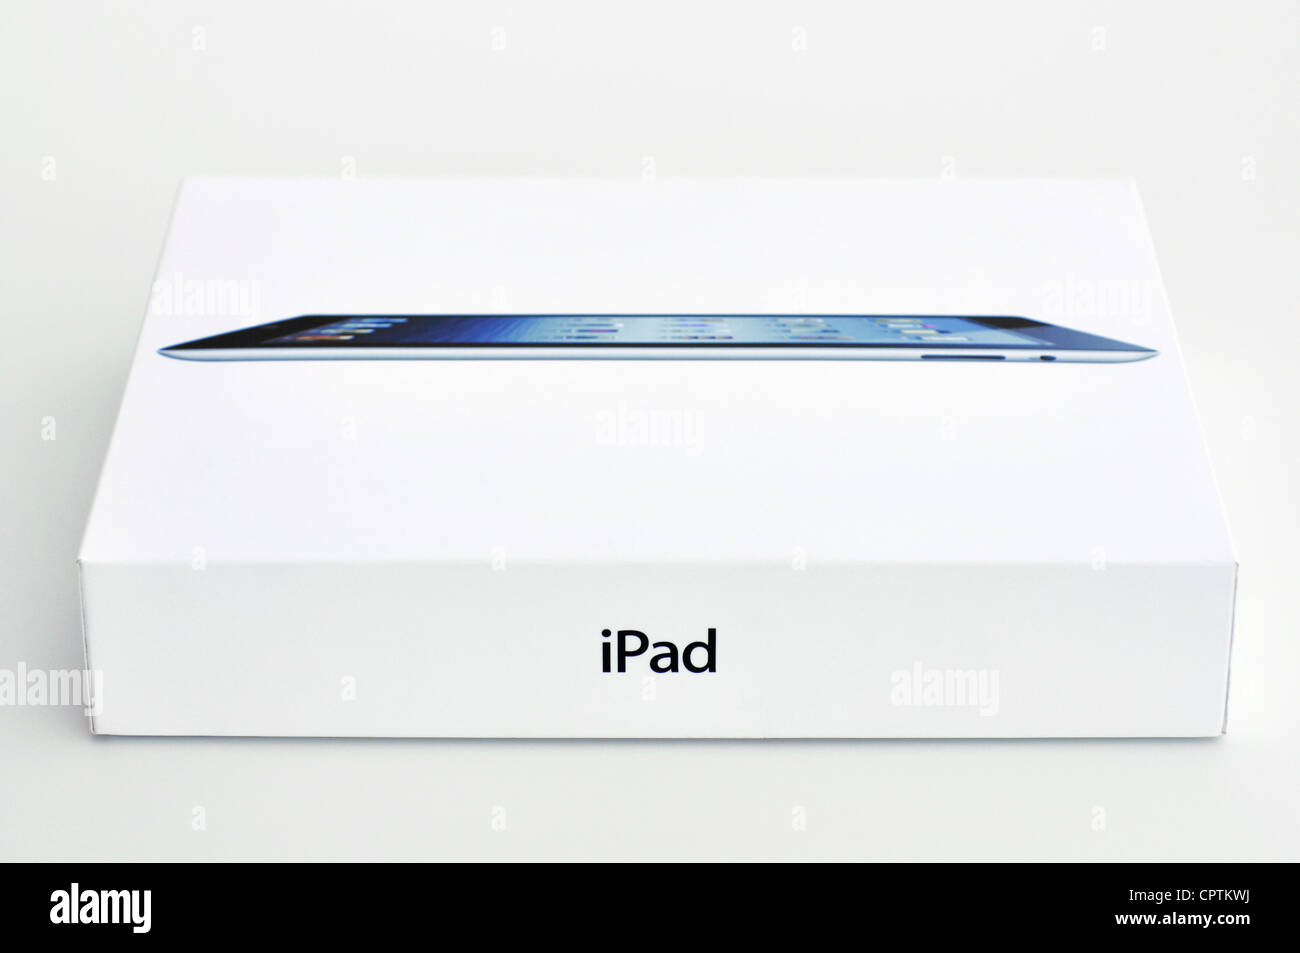 iPad box Stock Photo